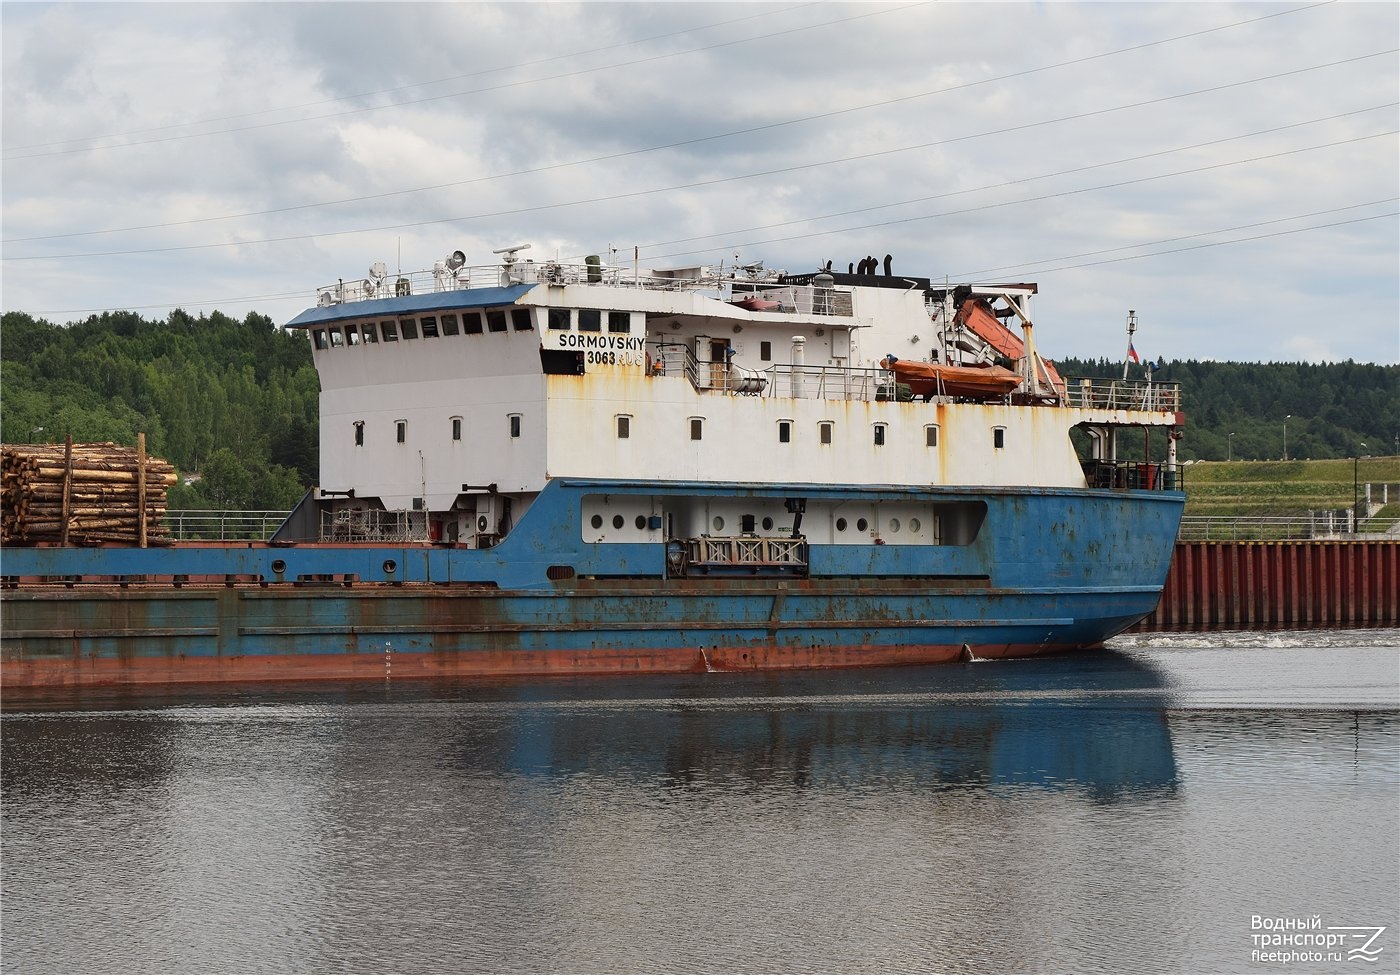 Сормовский-3063. Vessel superstructures